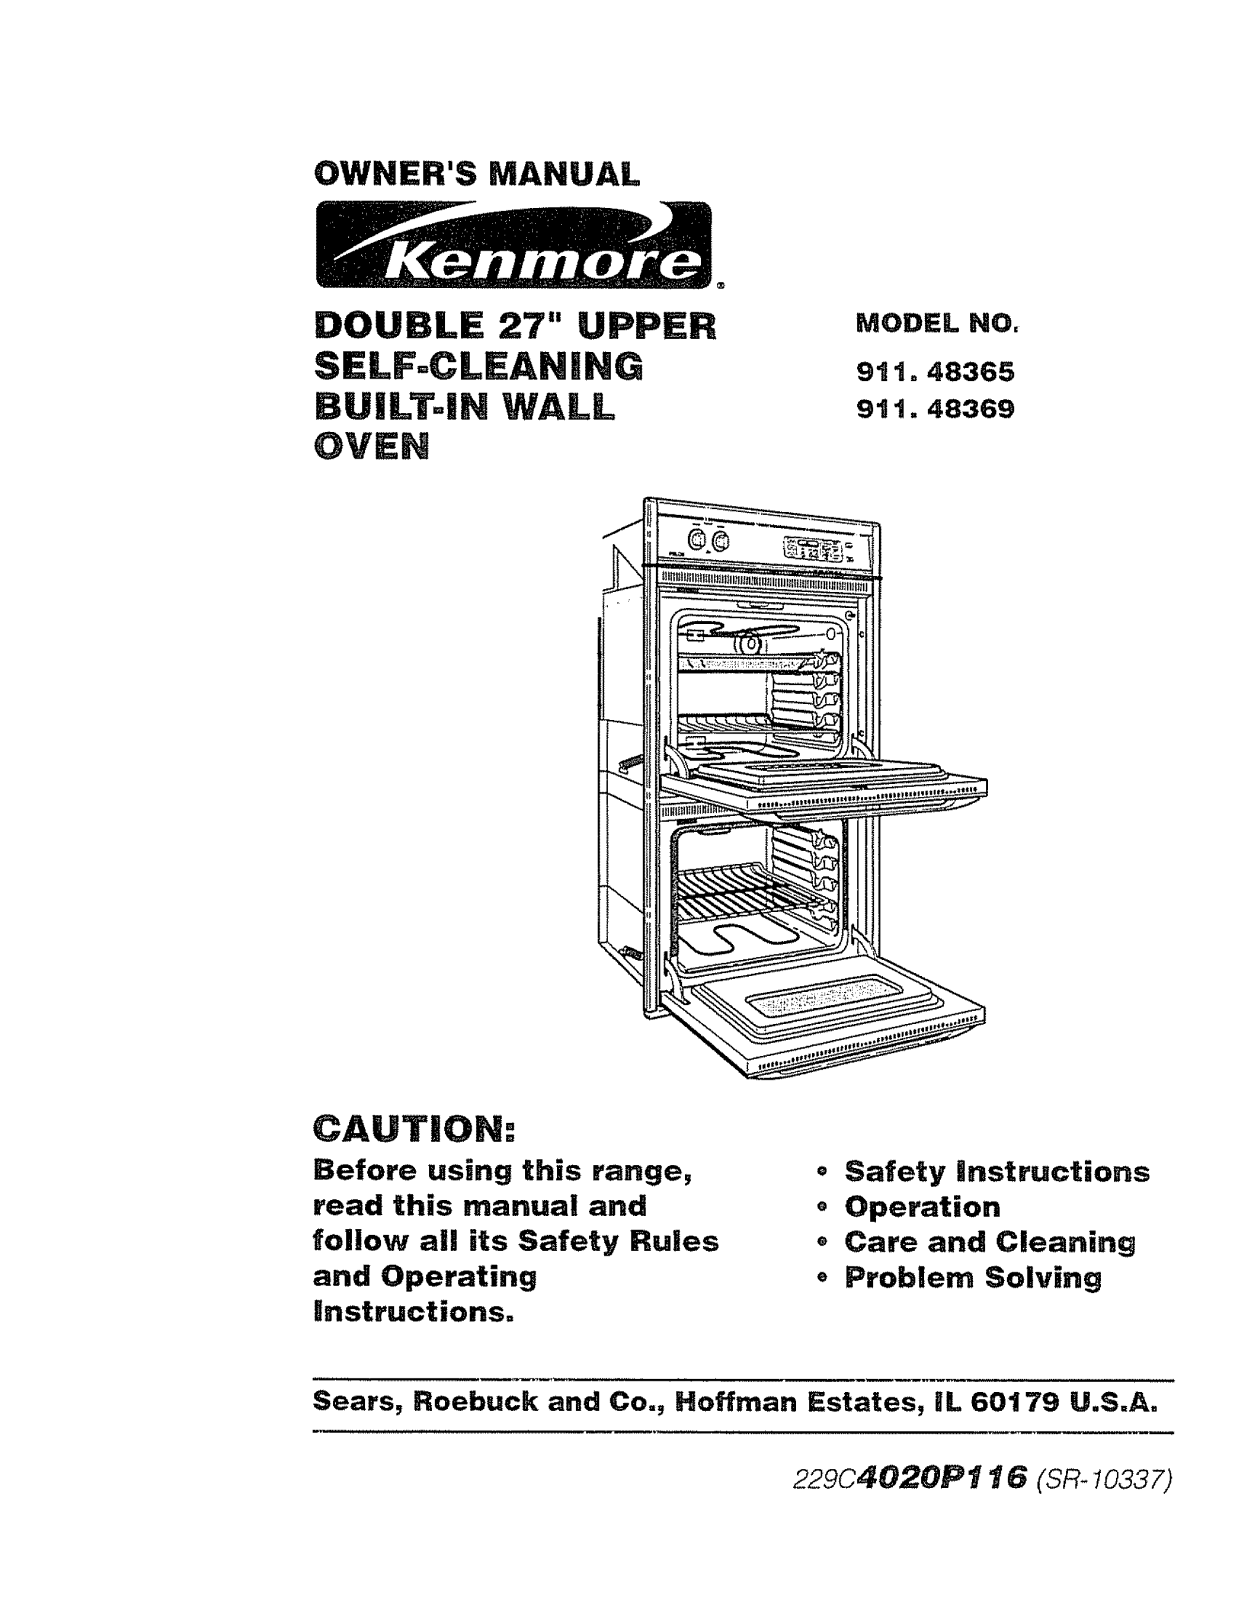 Kenmore 91148365791, 91148369791 Owner’s Manual